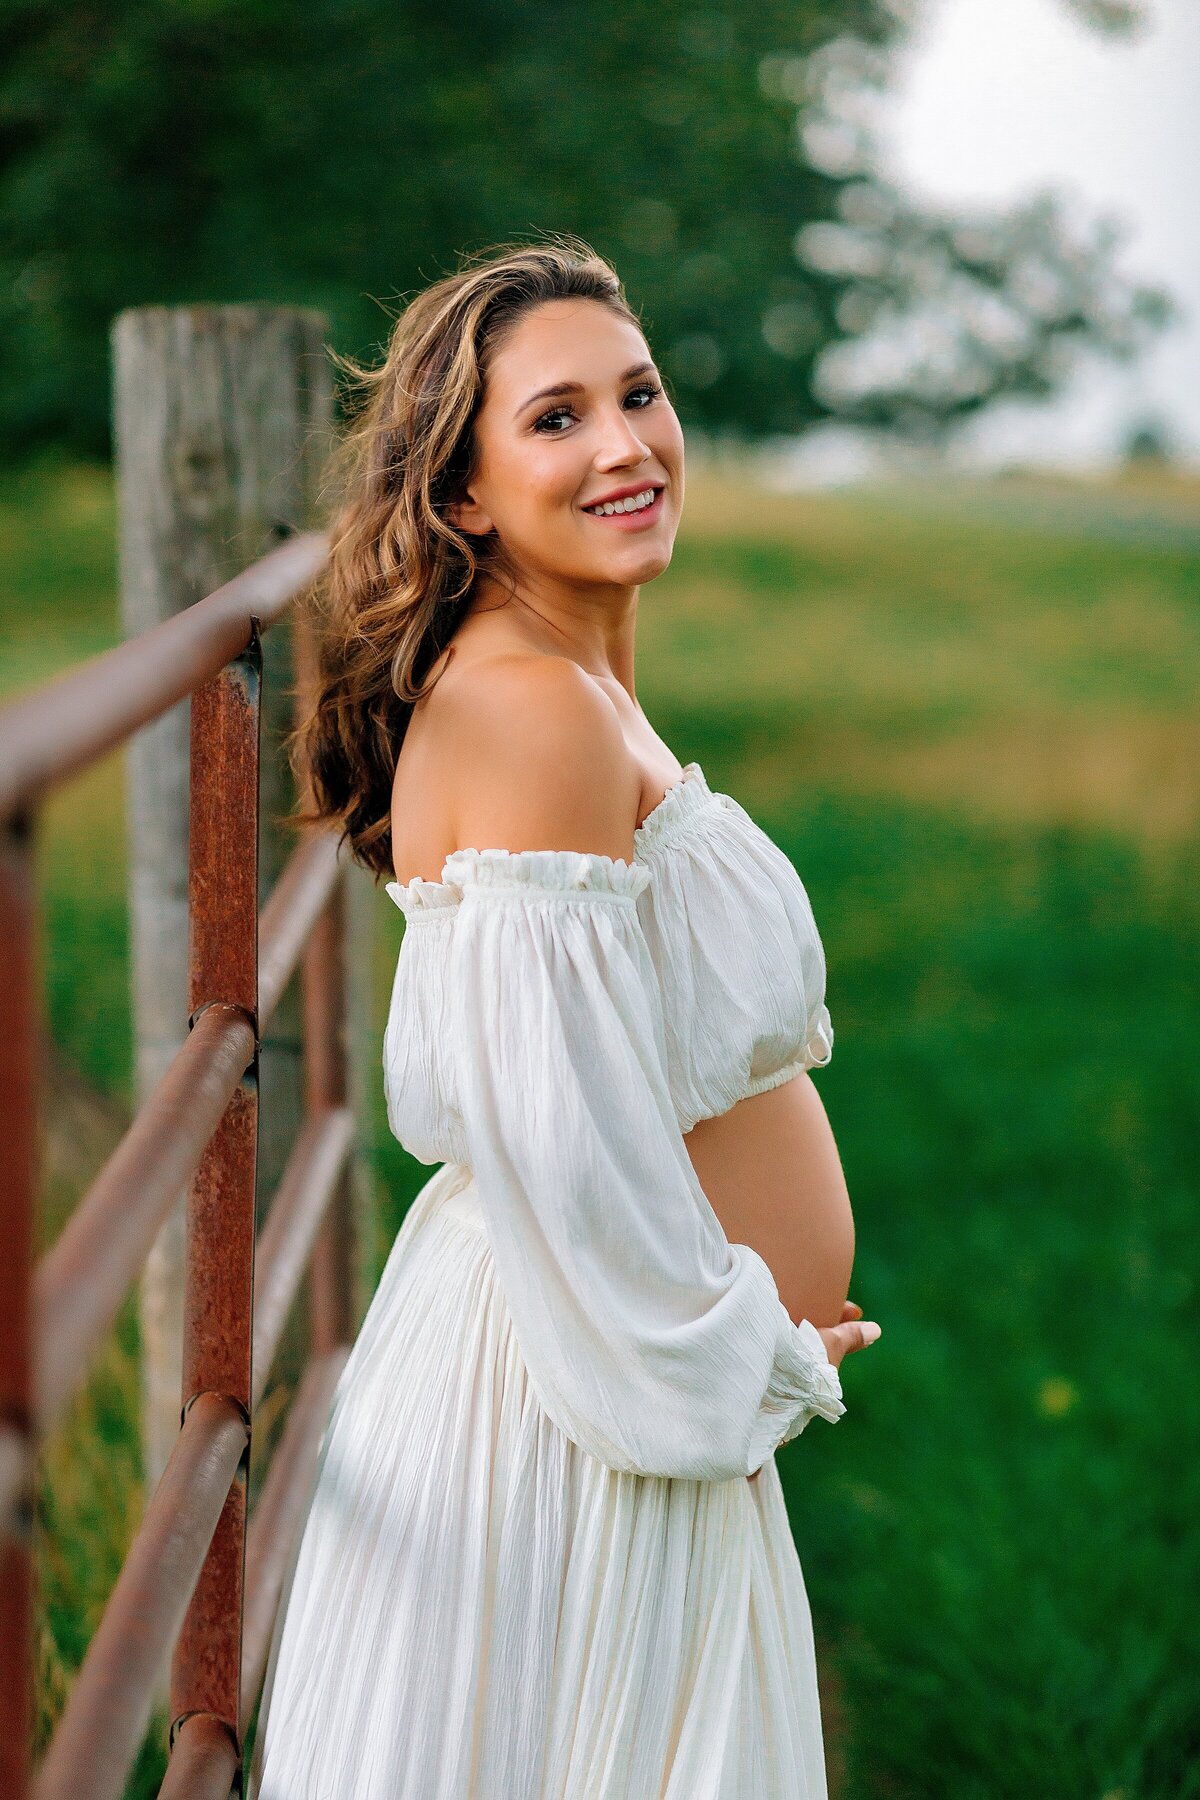 Pregnant woman in a field in a white dress Harrisonburg VA